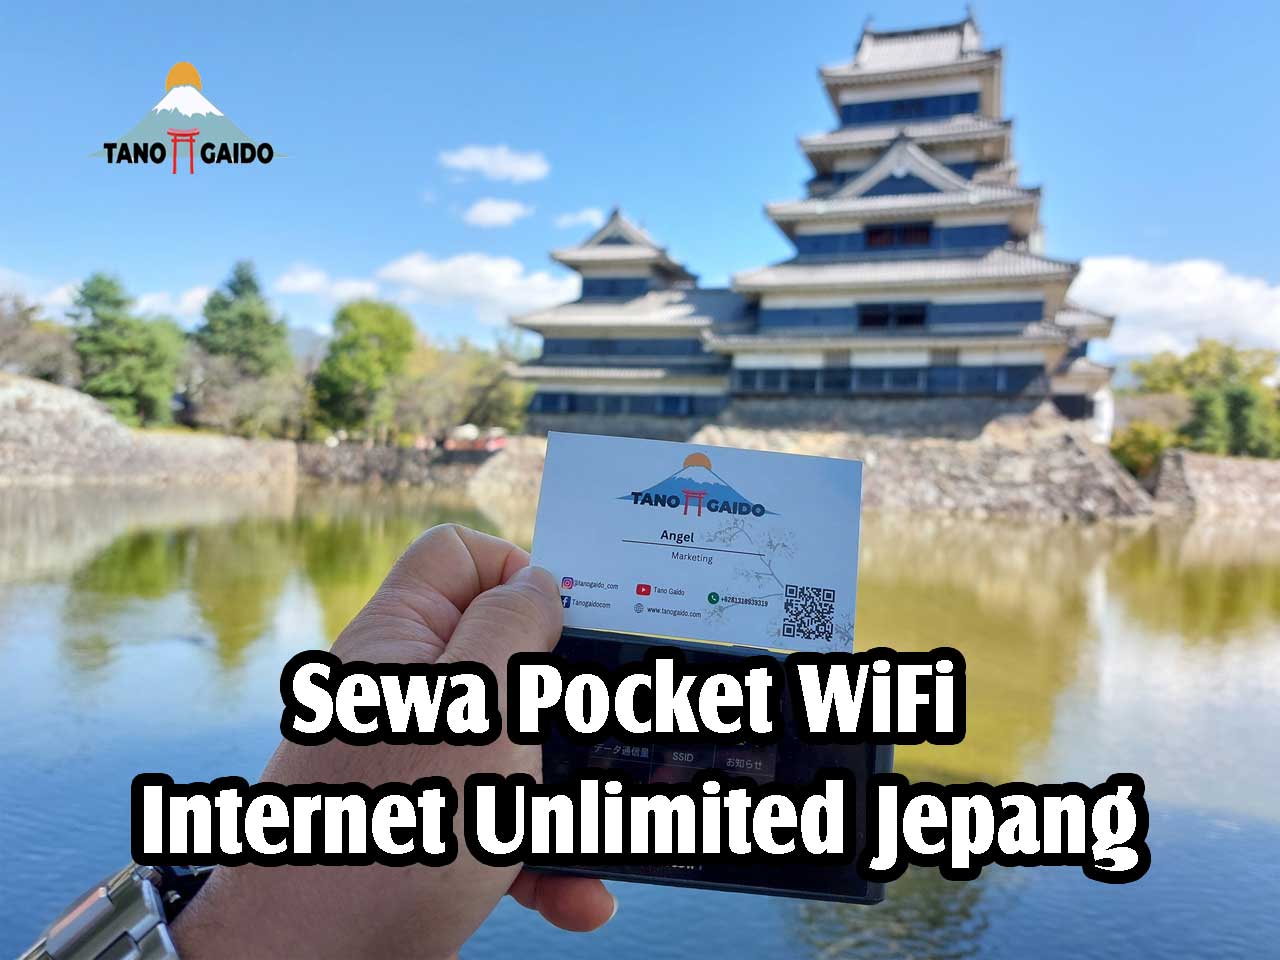 Sewa Pocket WiFi Internet Unlimited Jepang